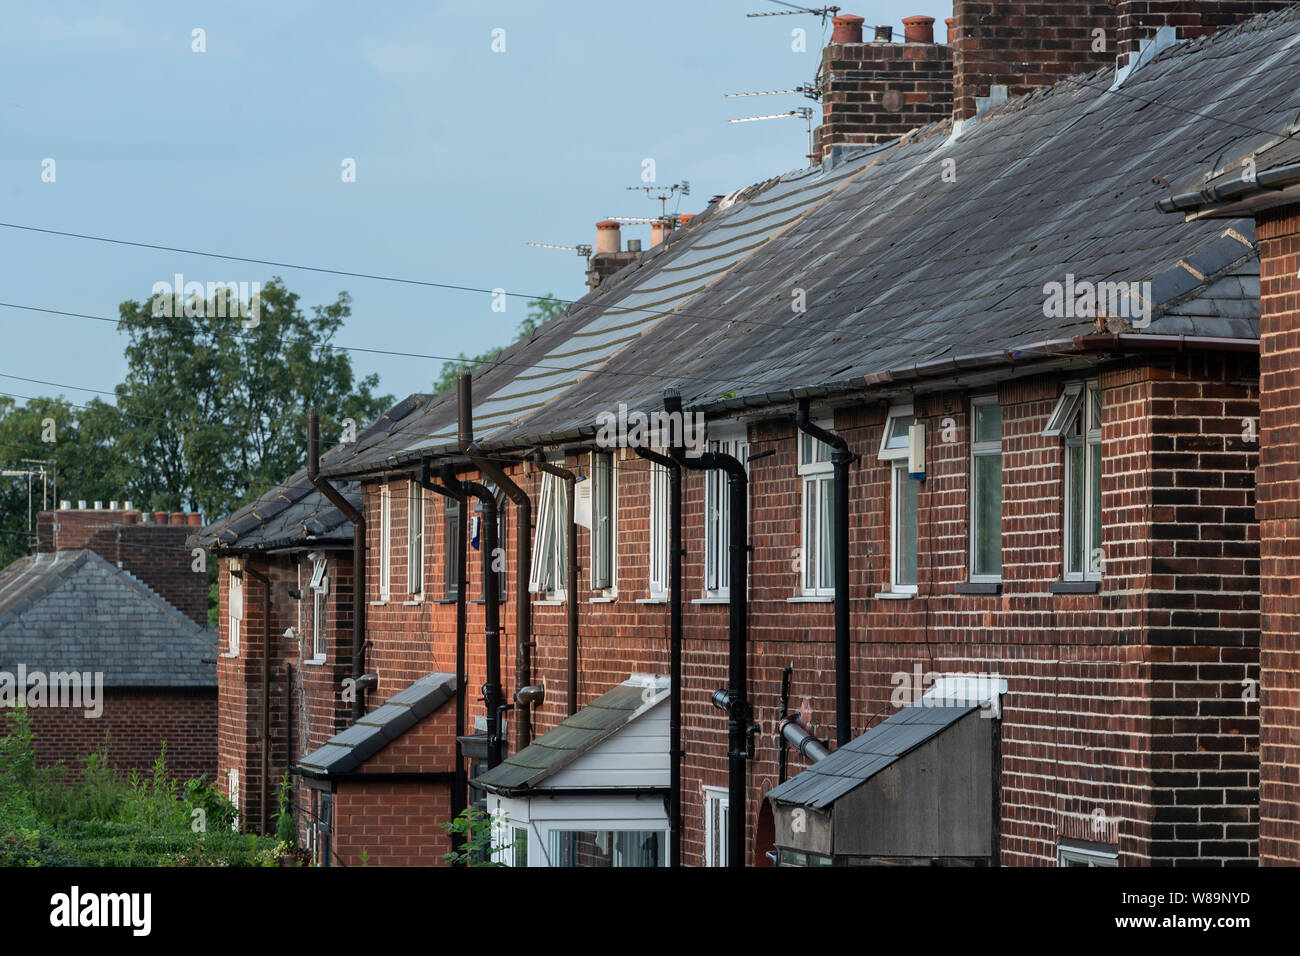 Un exemple de logement dans la région de South Manchester Wythenshawe (usage éditorial uniquement). Banque D'Images